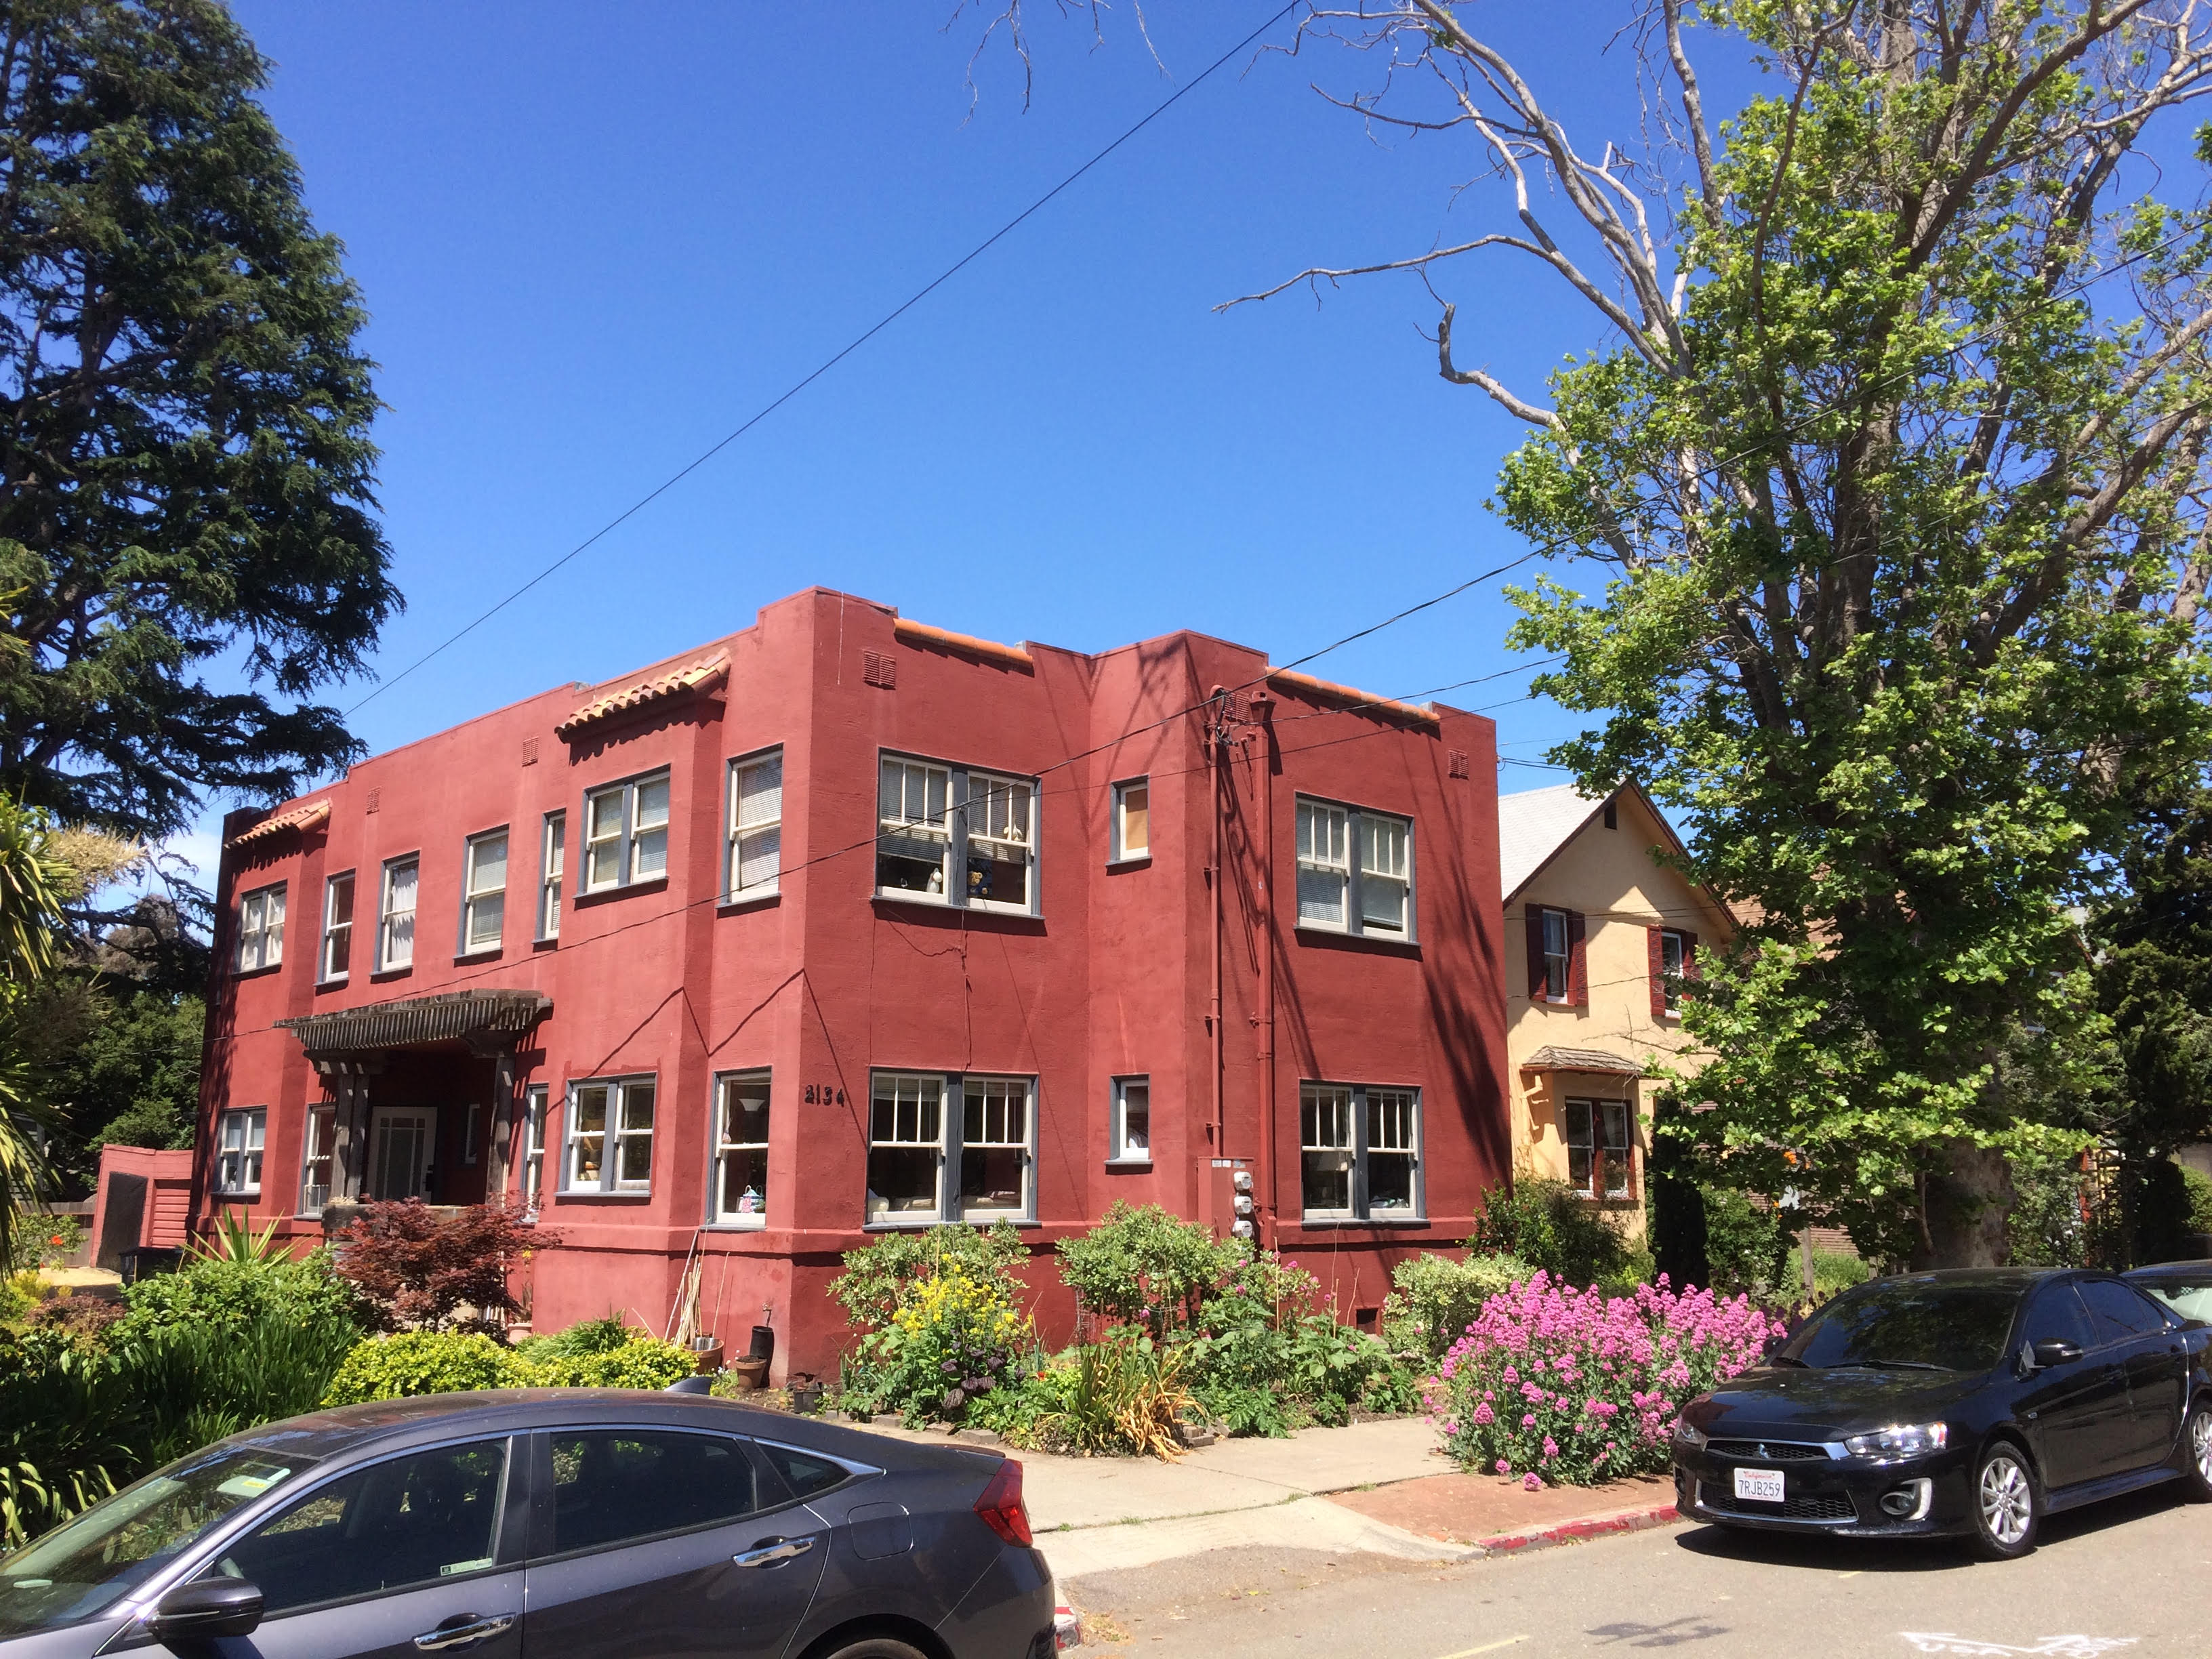 A 1920s fourplex next to single-family home in Berkeley.